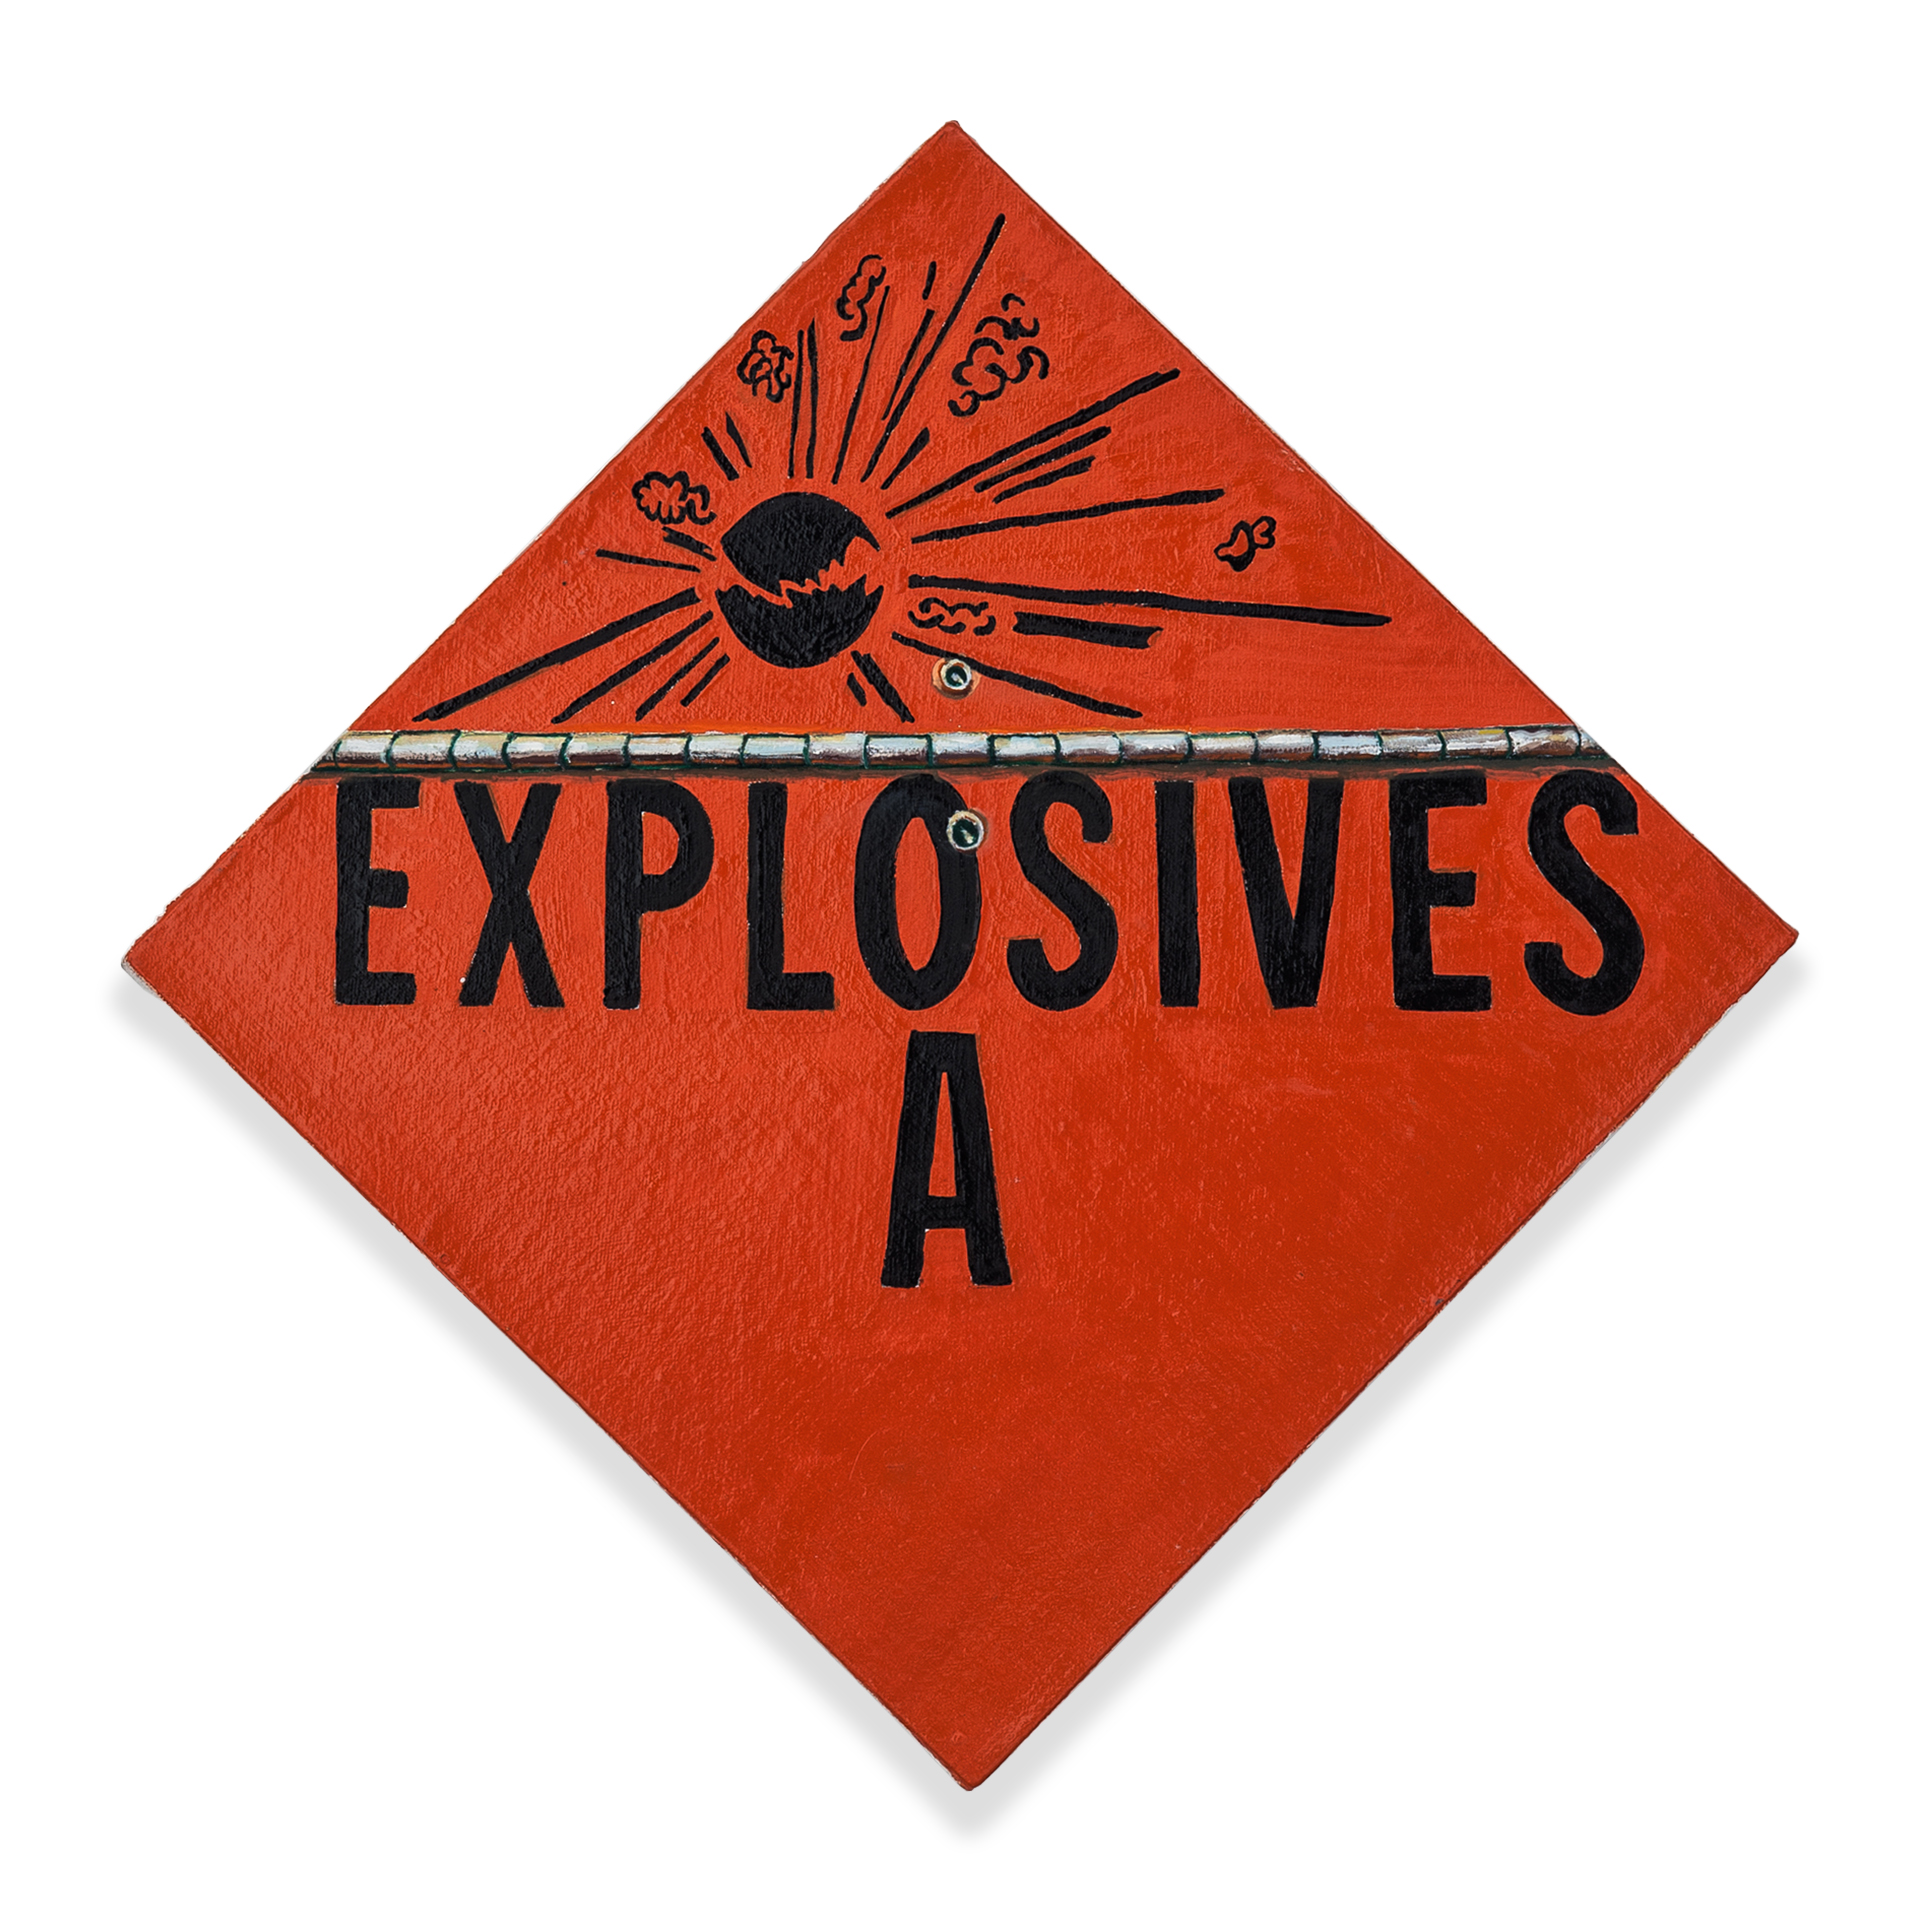 Explosives A